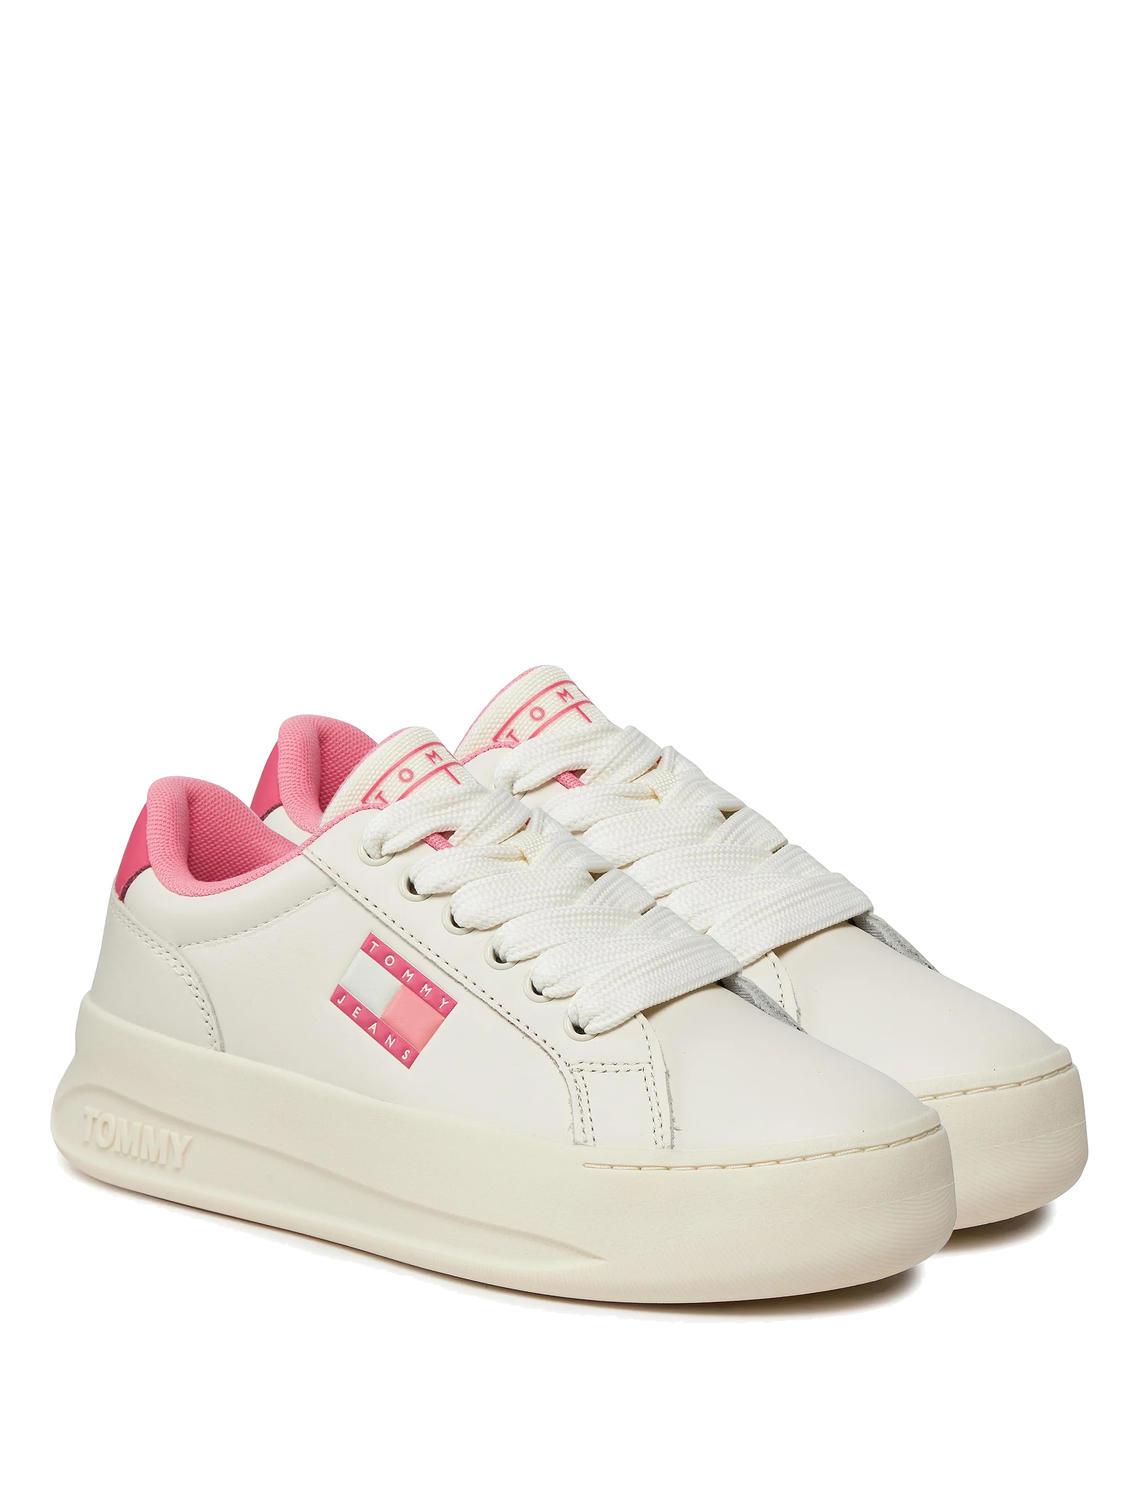 Pink Tommy Hilfiger Shoes Sale Online | bellvalefarms.com